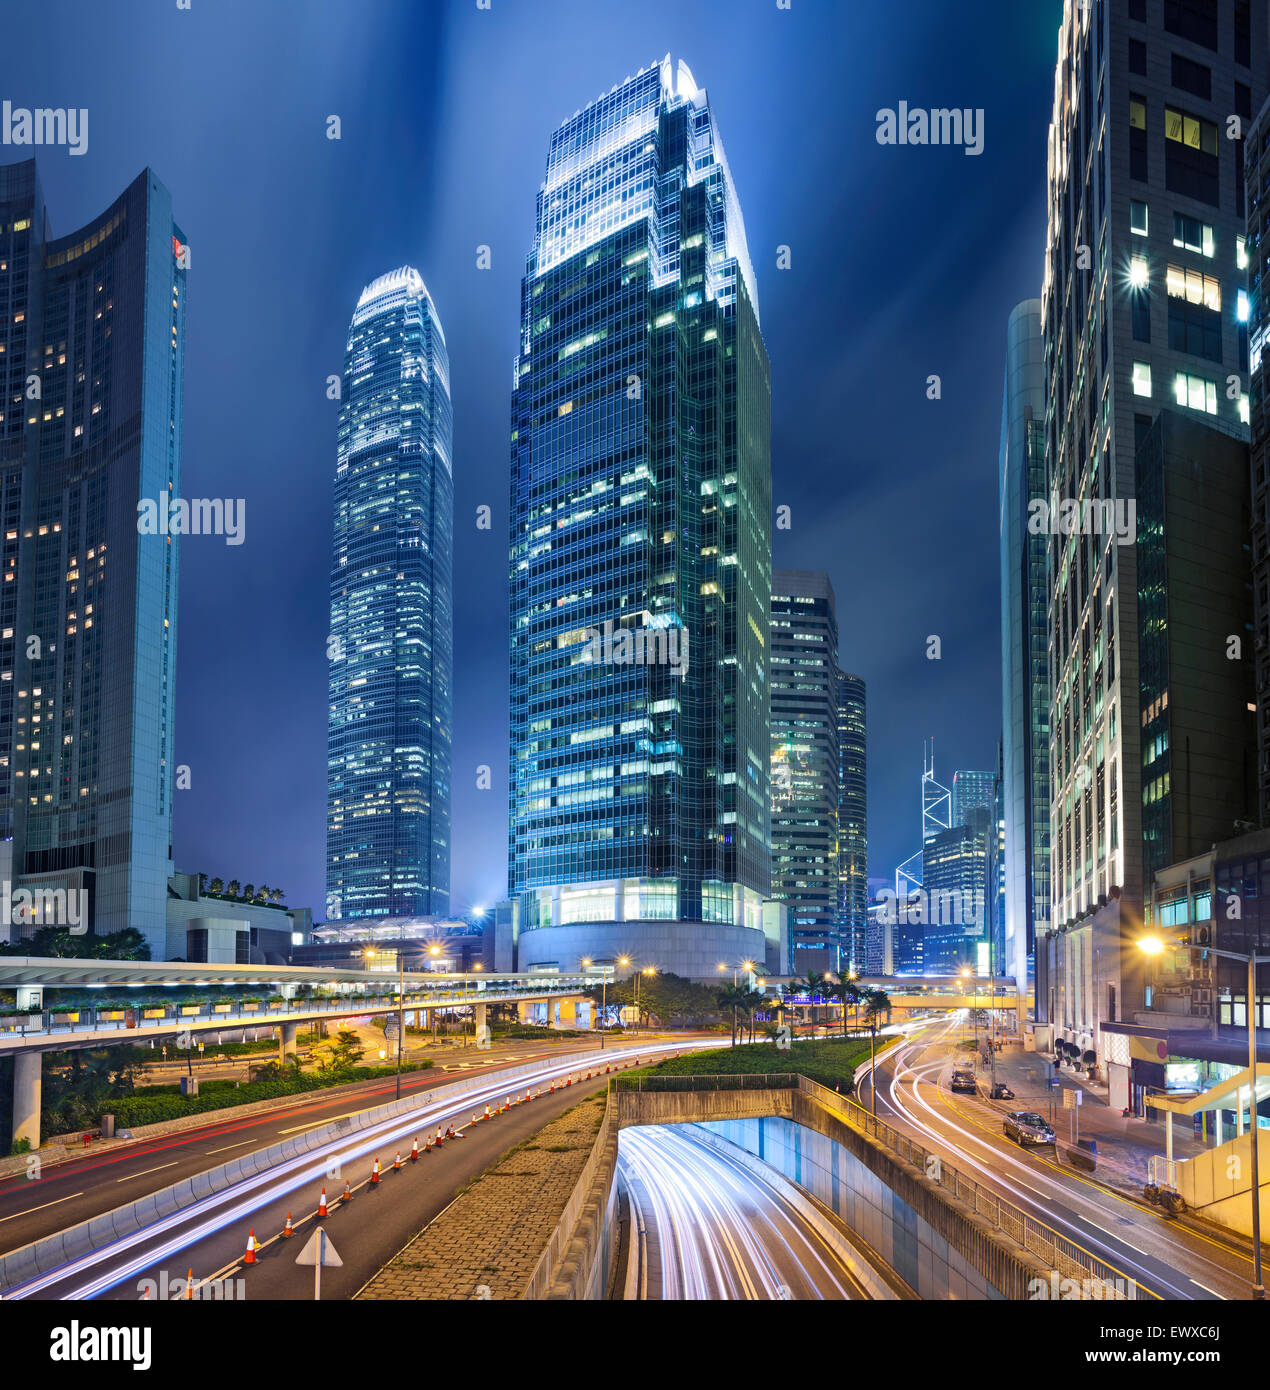 Immagine del centro cittadino di Hong Kong di notte. Questo è il composito di tre immagini verticali cucite insieme in photoshop. Foto Stock